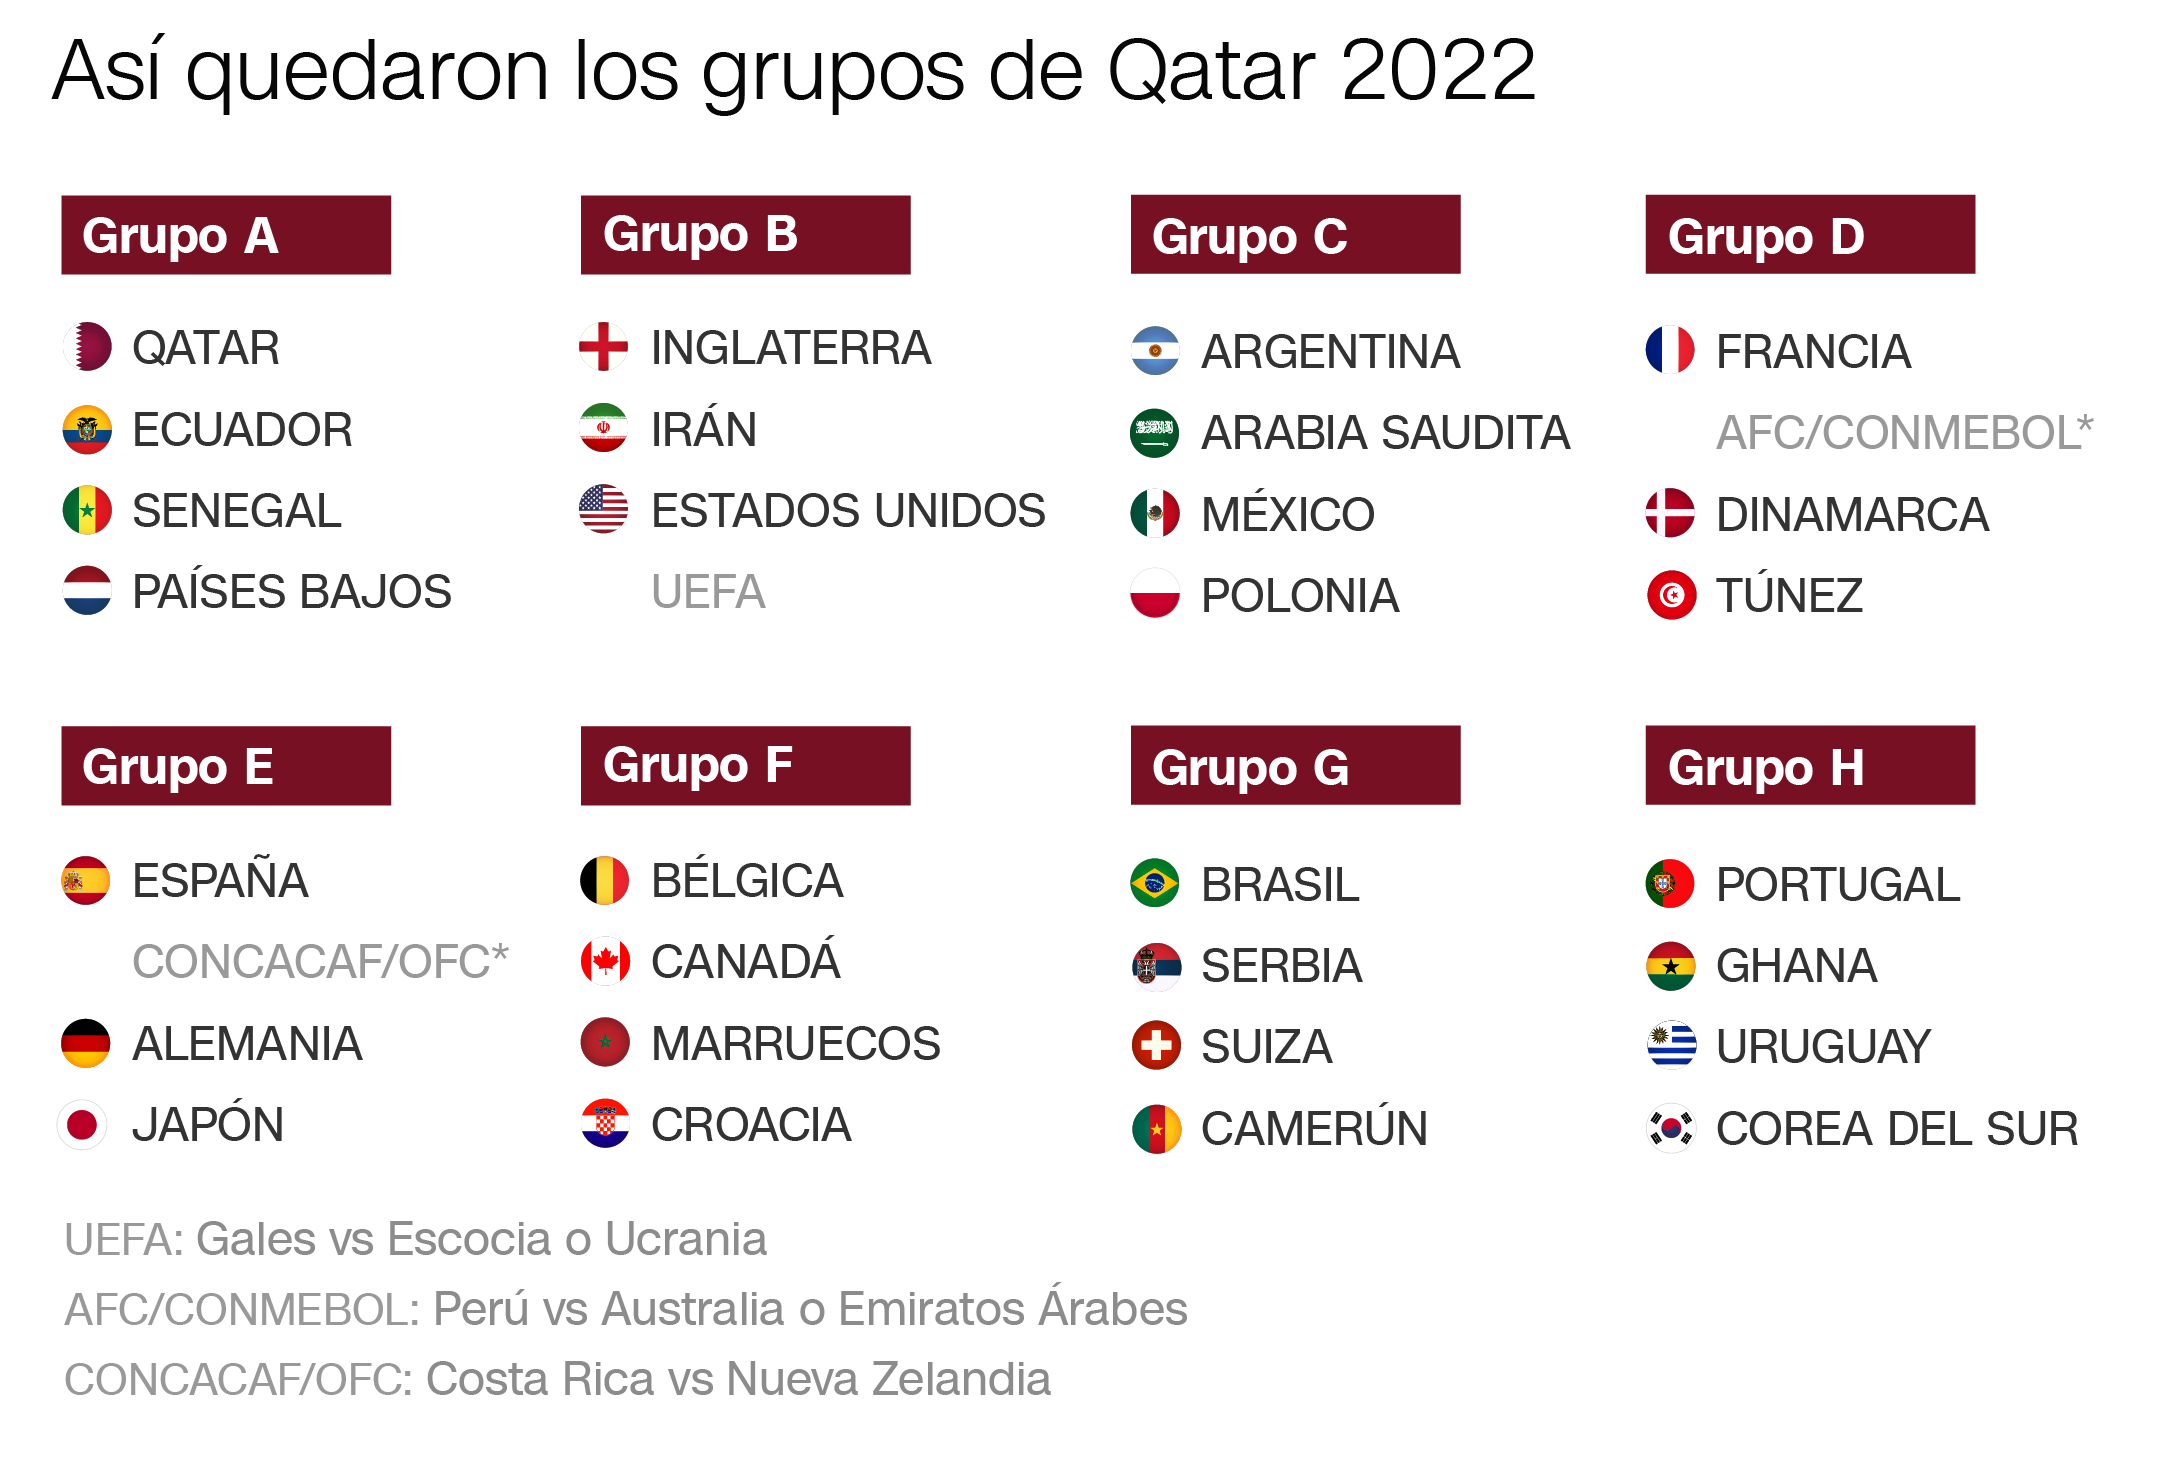 Los partidos más importantes y los grupos más difíciles: lo que dejó el Qatar 2022